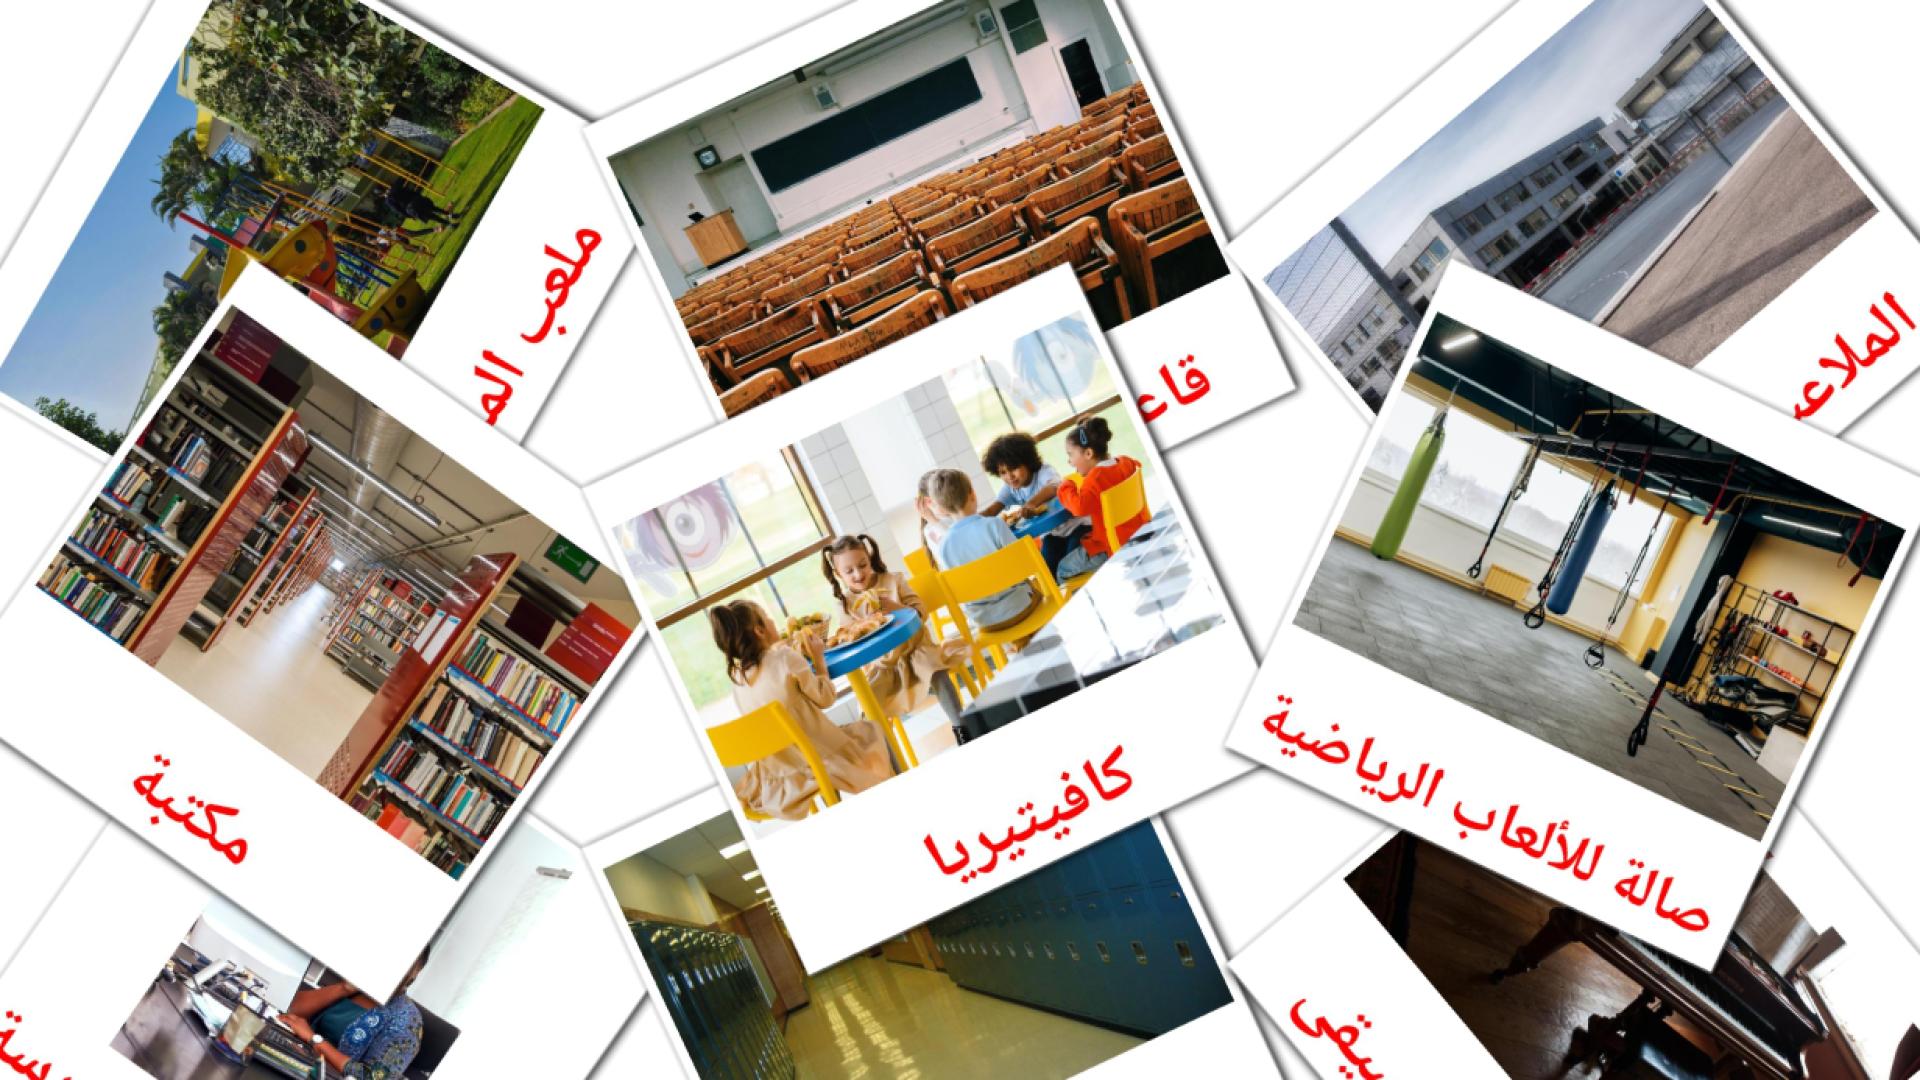 Schulgebäude - Arabisch Vokabelkarten